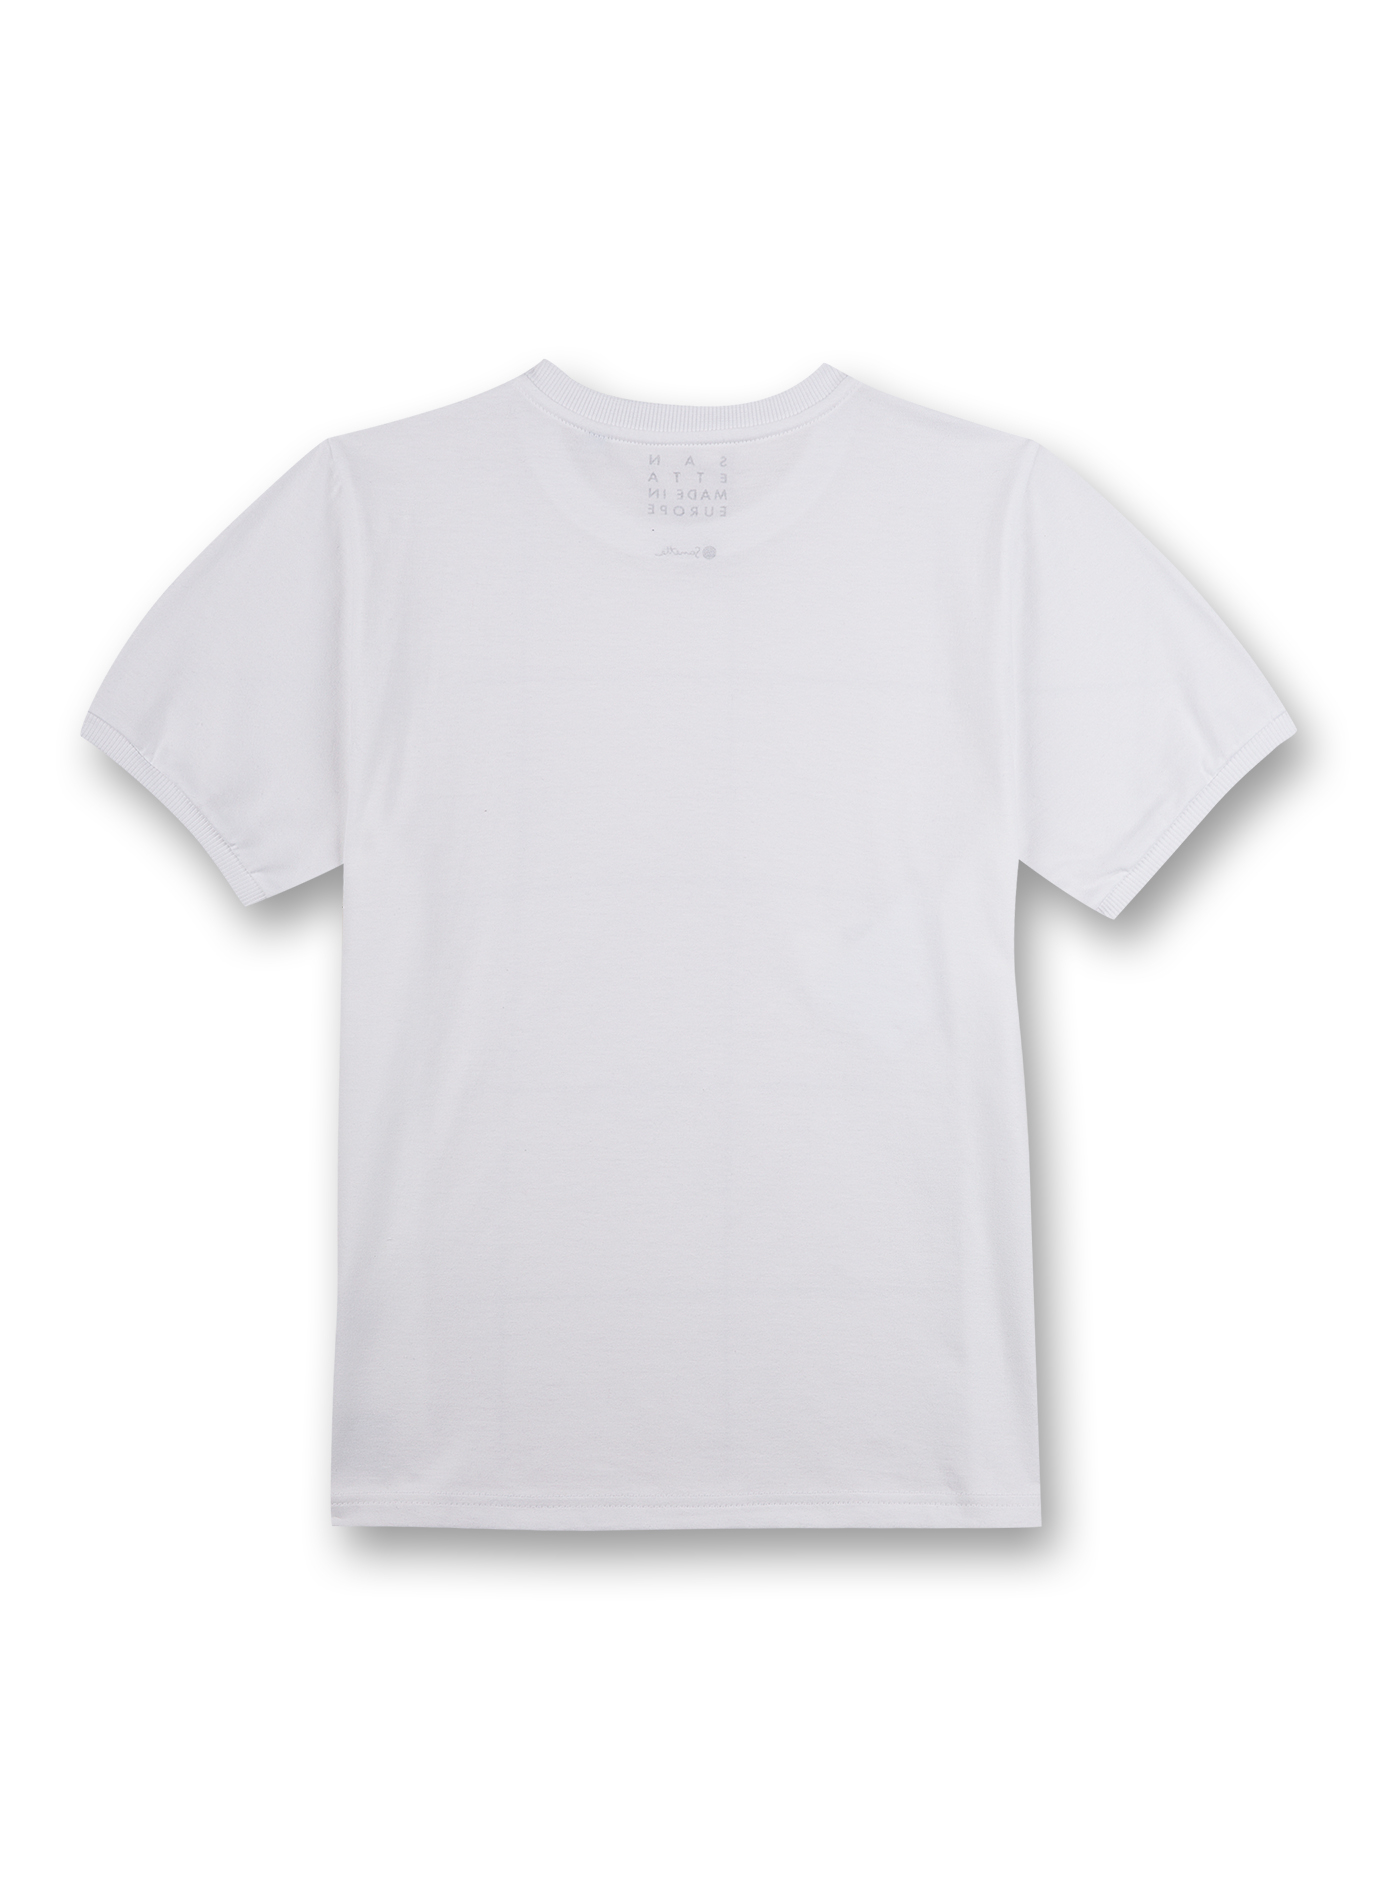 Jungen T-Shirt Weiß Street Vibes